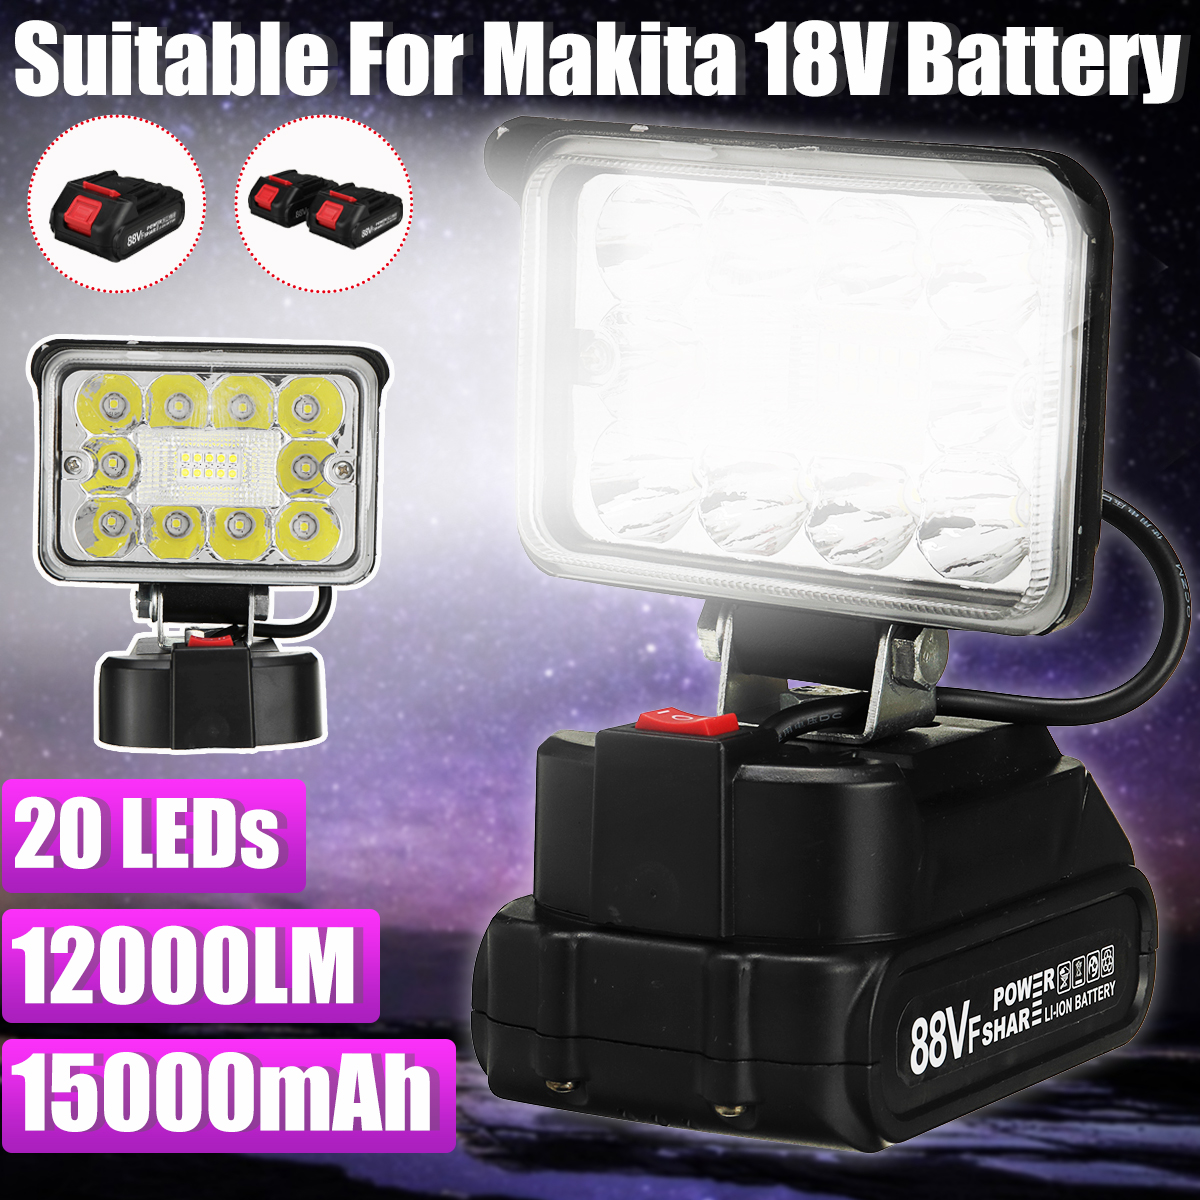 12000lm-20-LEDS-Spotlight-Work-Light-Torch-Camping-Light-for-18V-MakitaBattery-1961197-1